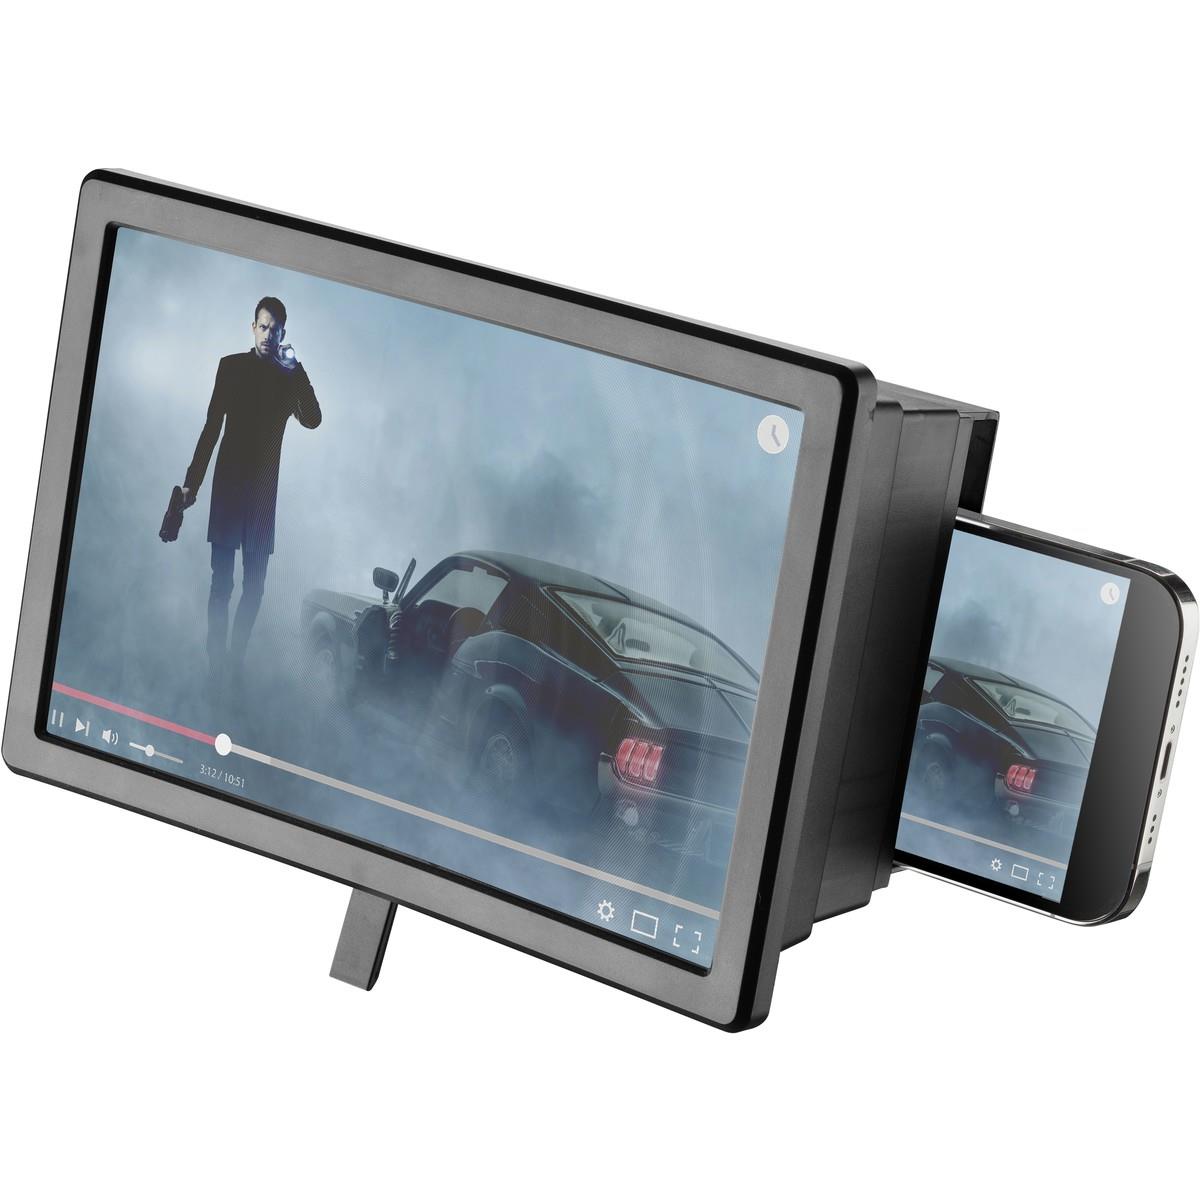 Bildschirmvergrößerer MOVIE THEATER mit Stativ für Smartphones bis 6,5 Zoll